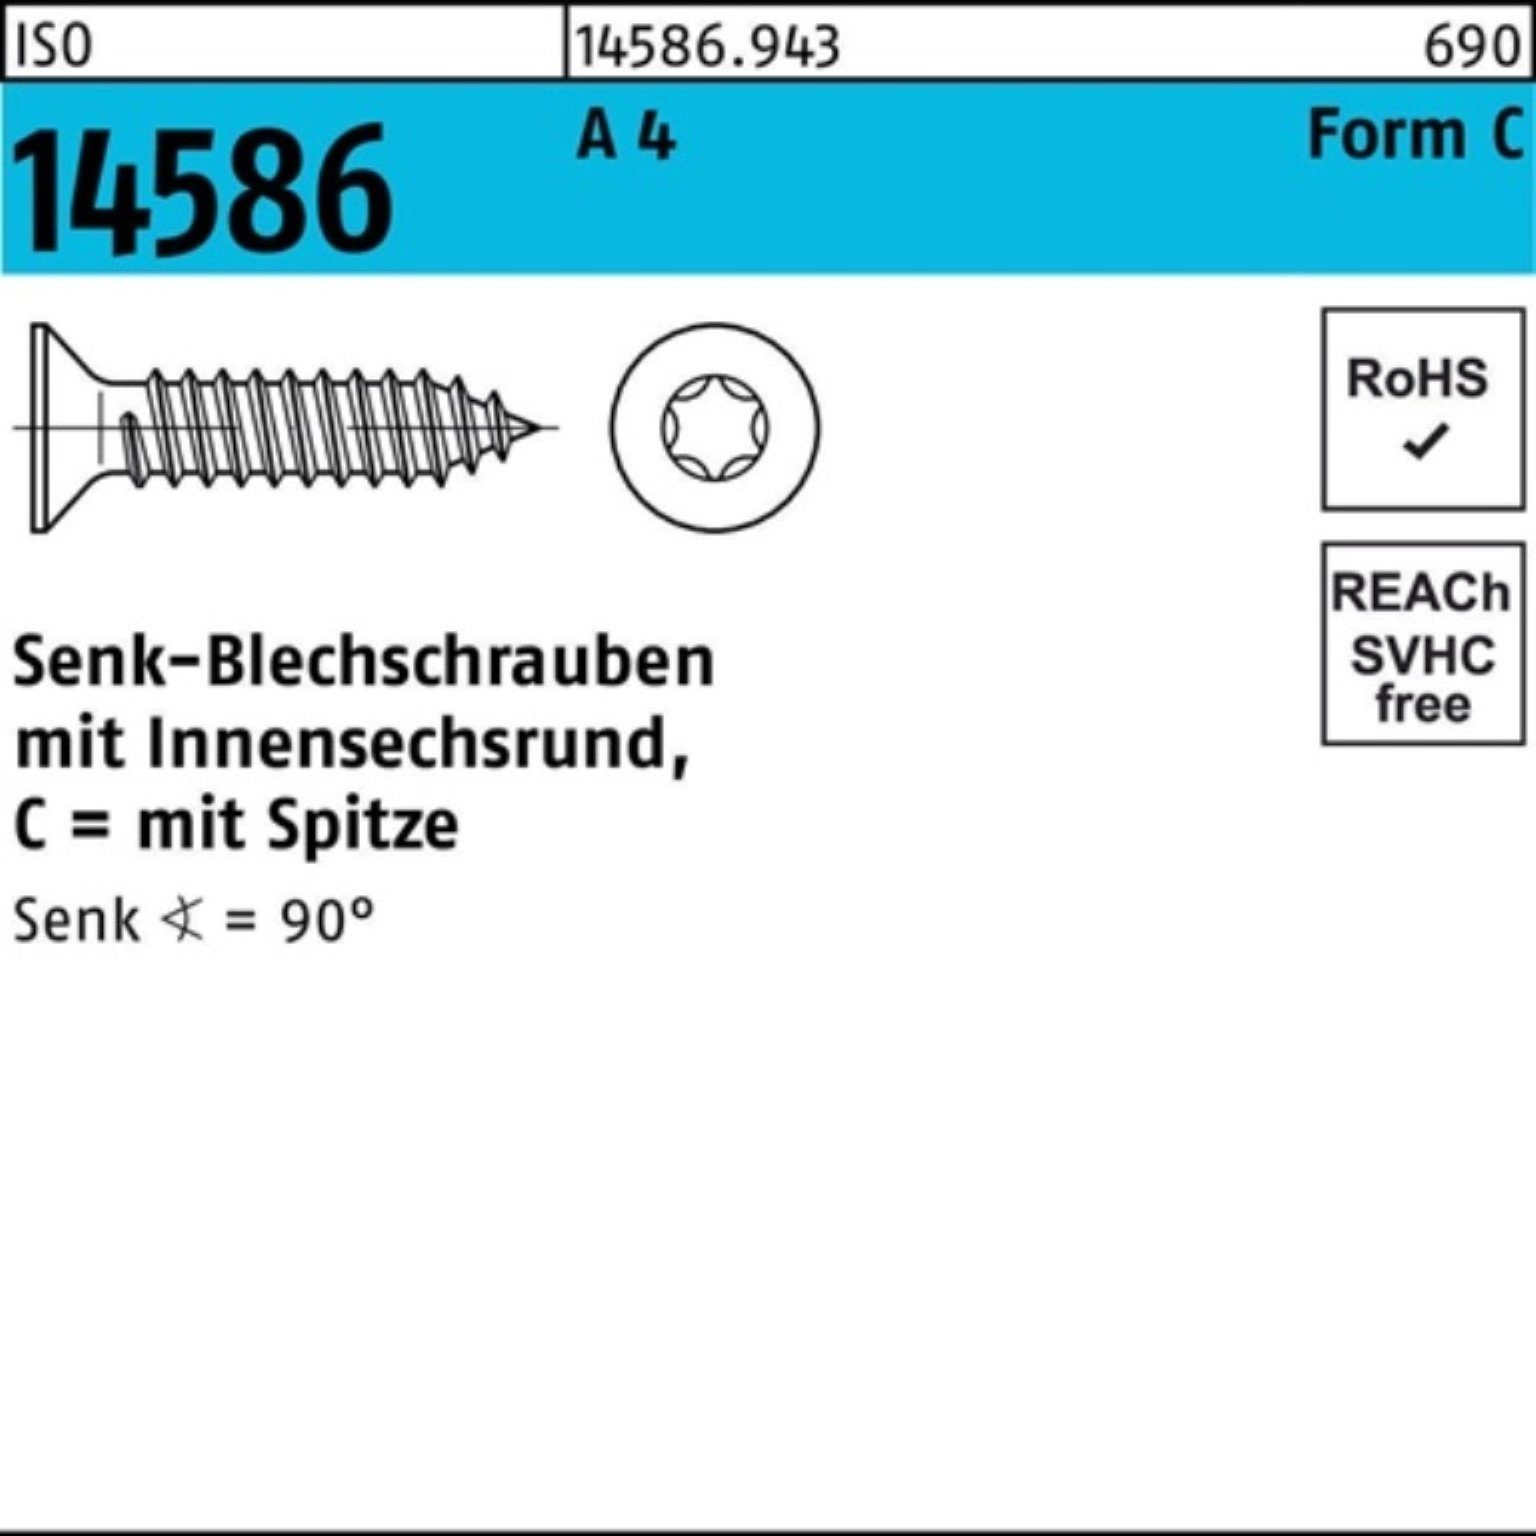 250er Pack 4 250 Schraube A ISO 70-T30 14586 ISR/Spitze Senkblechschraube Reyher 6,3x